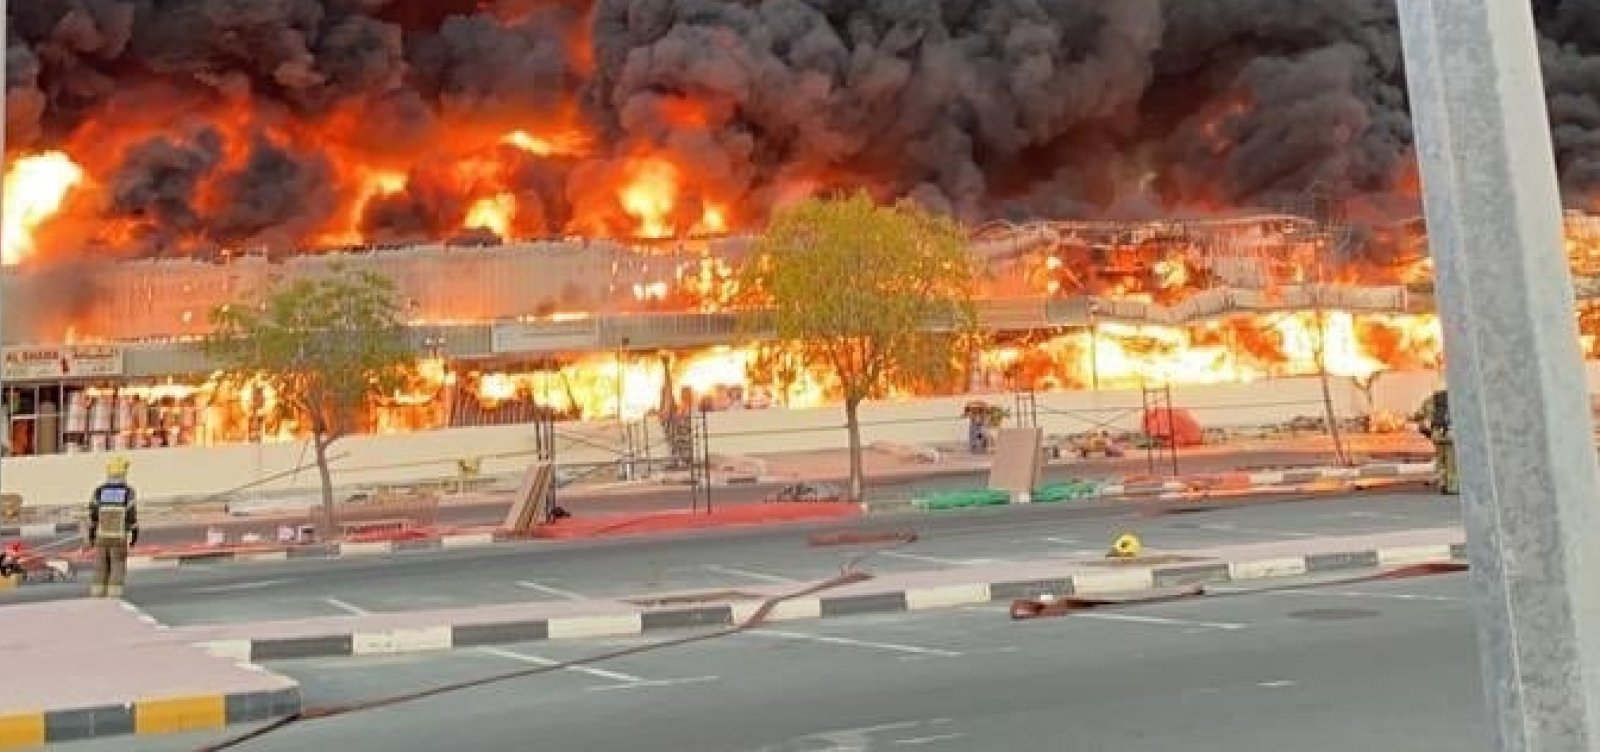 Incêndio de grandes proporções destrói mercado em cidade nos Emirados Árabes; veja vídeo